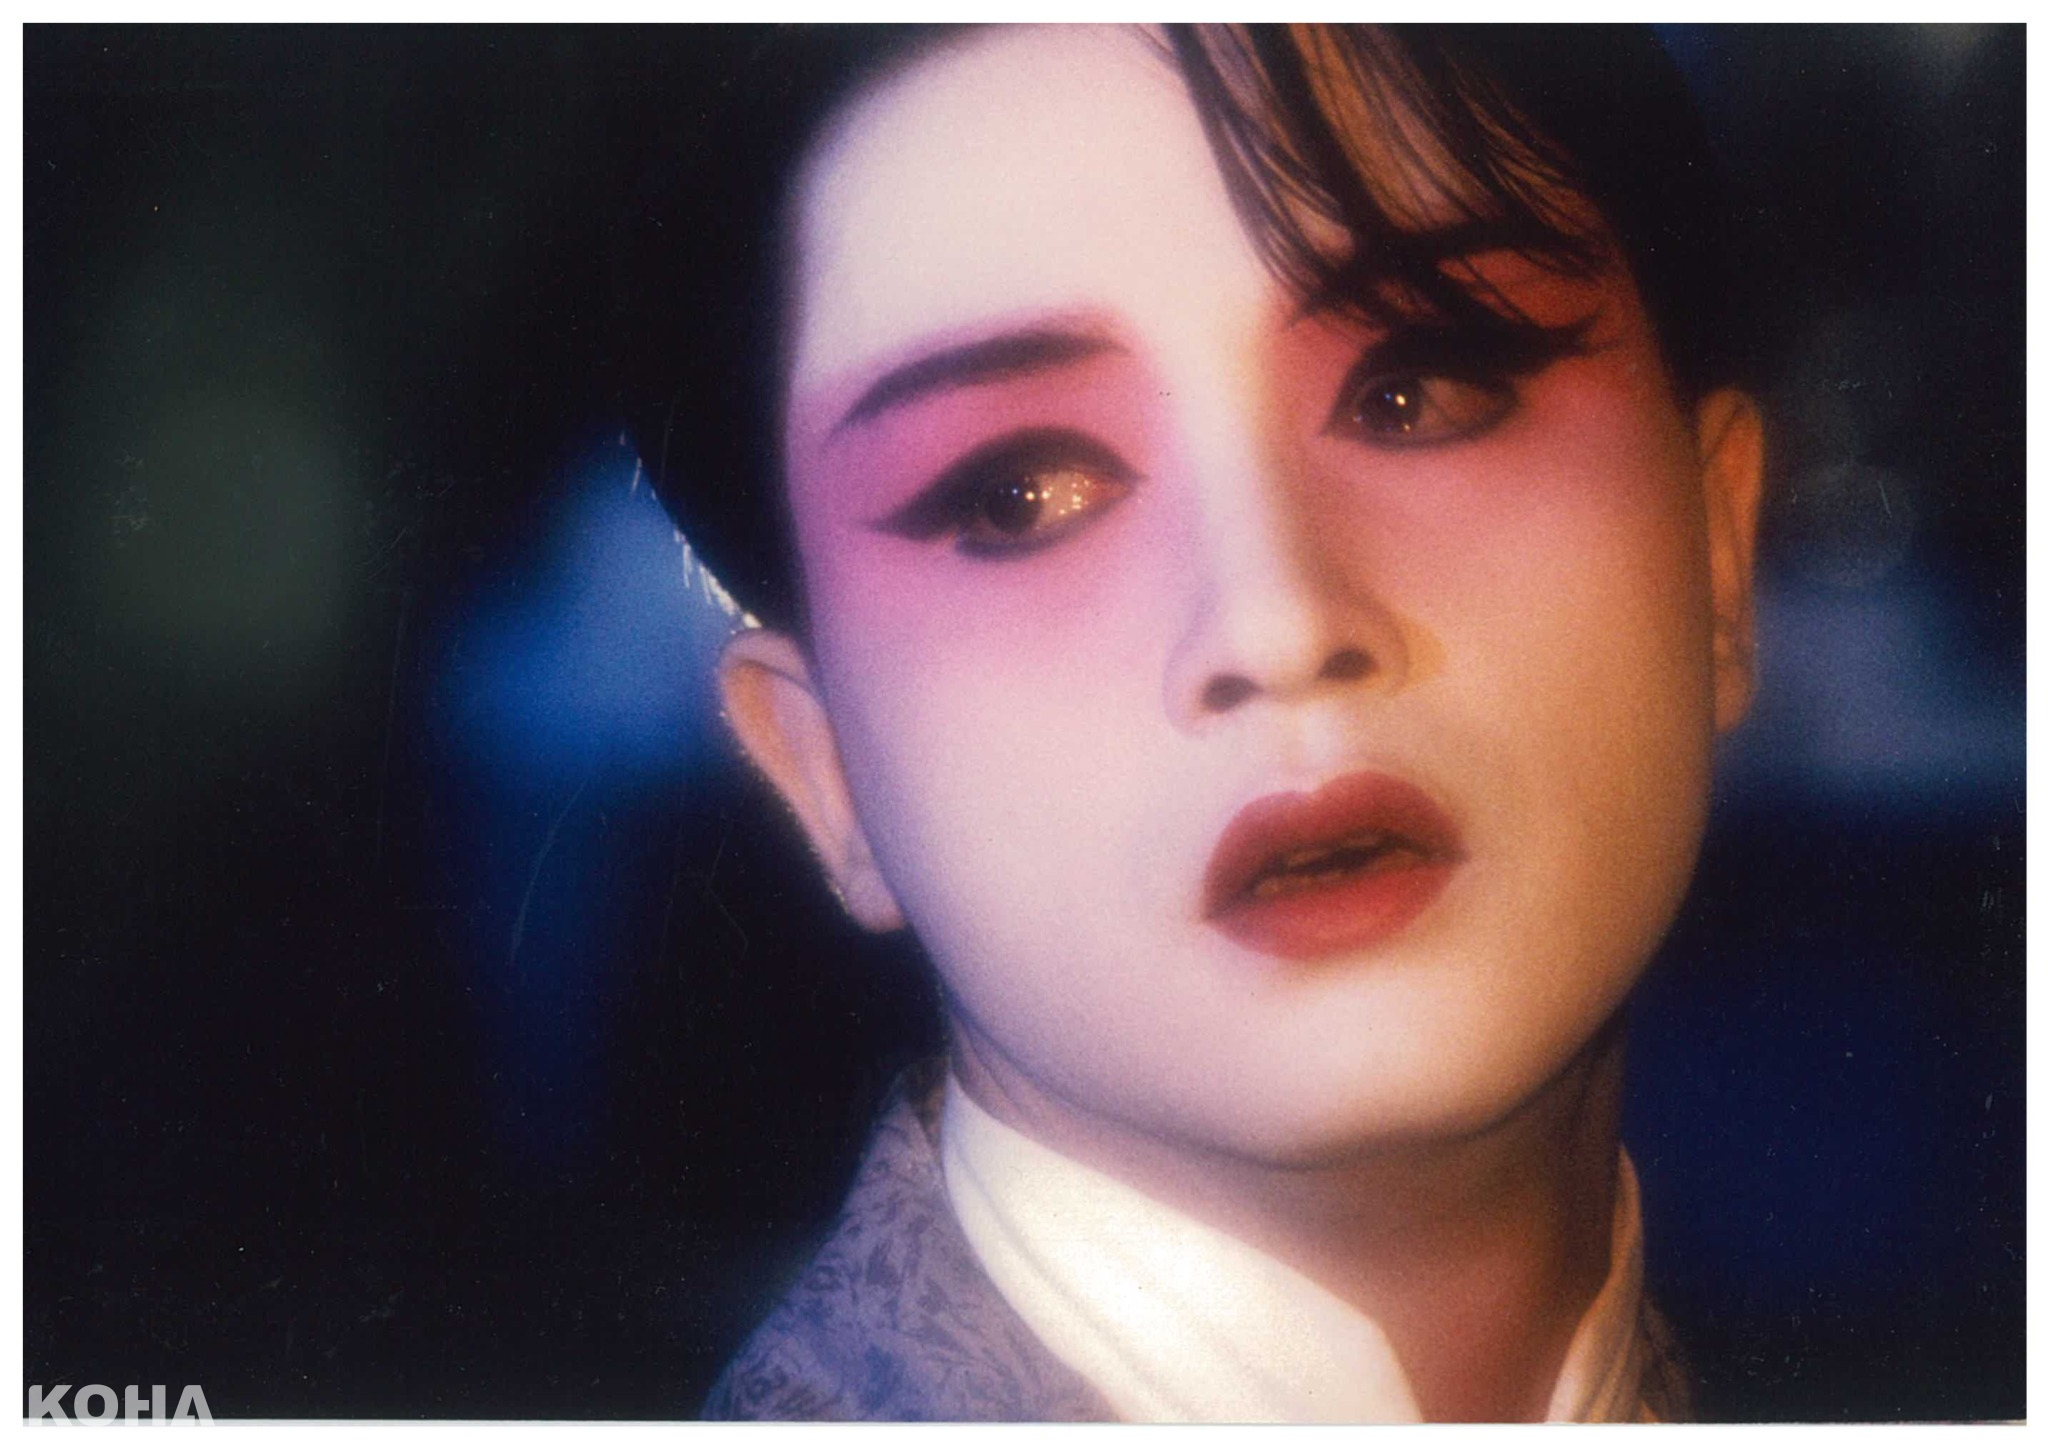 1993年張國榮以電影《霸王別姬》獲得日本影評人協會最佳男主角獎2